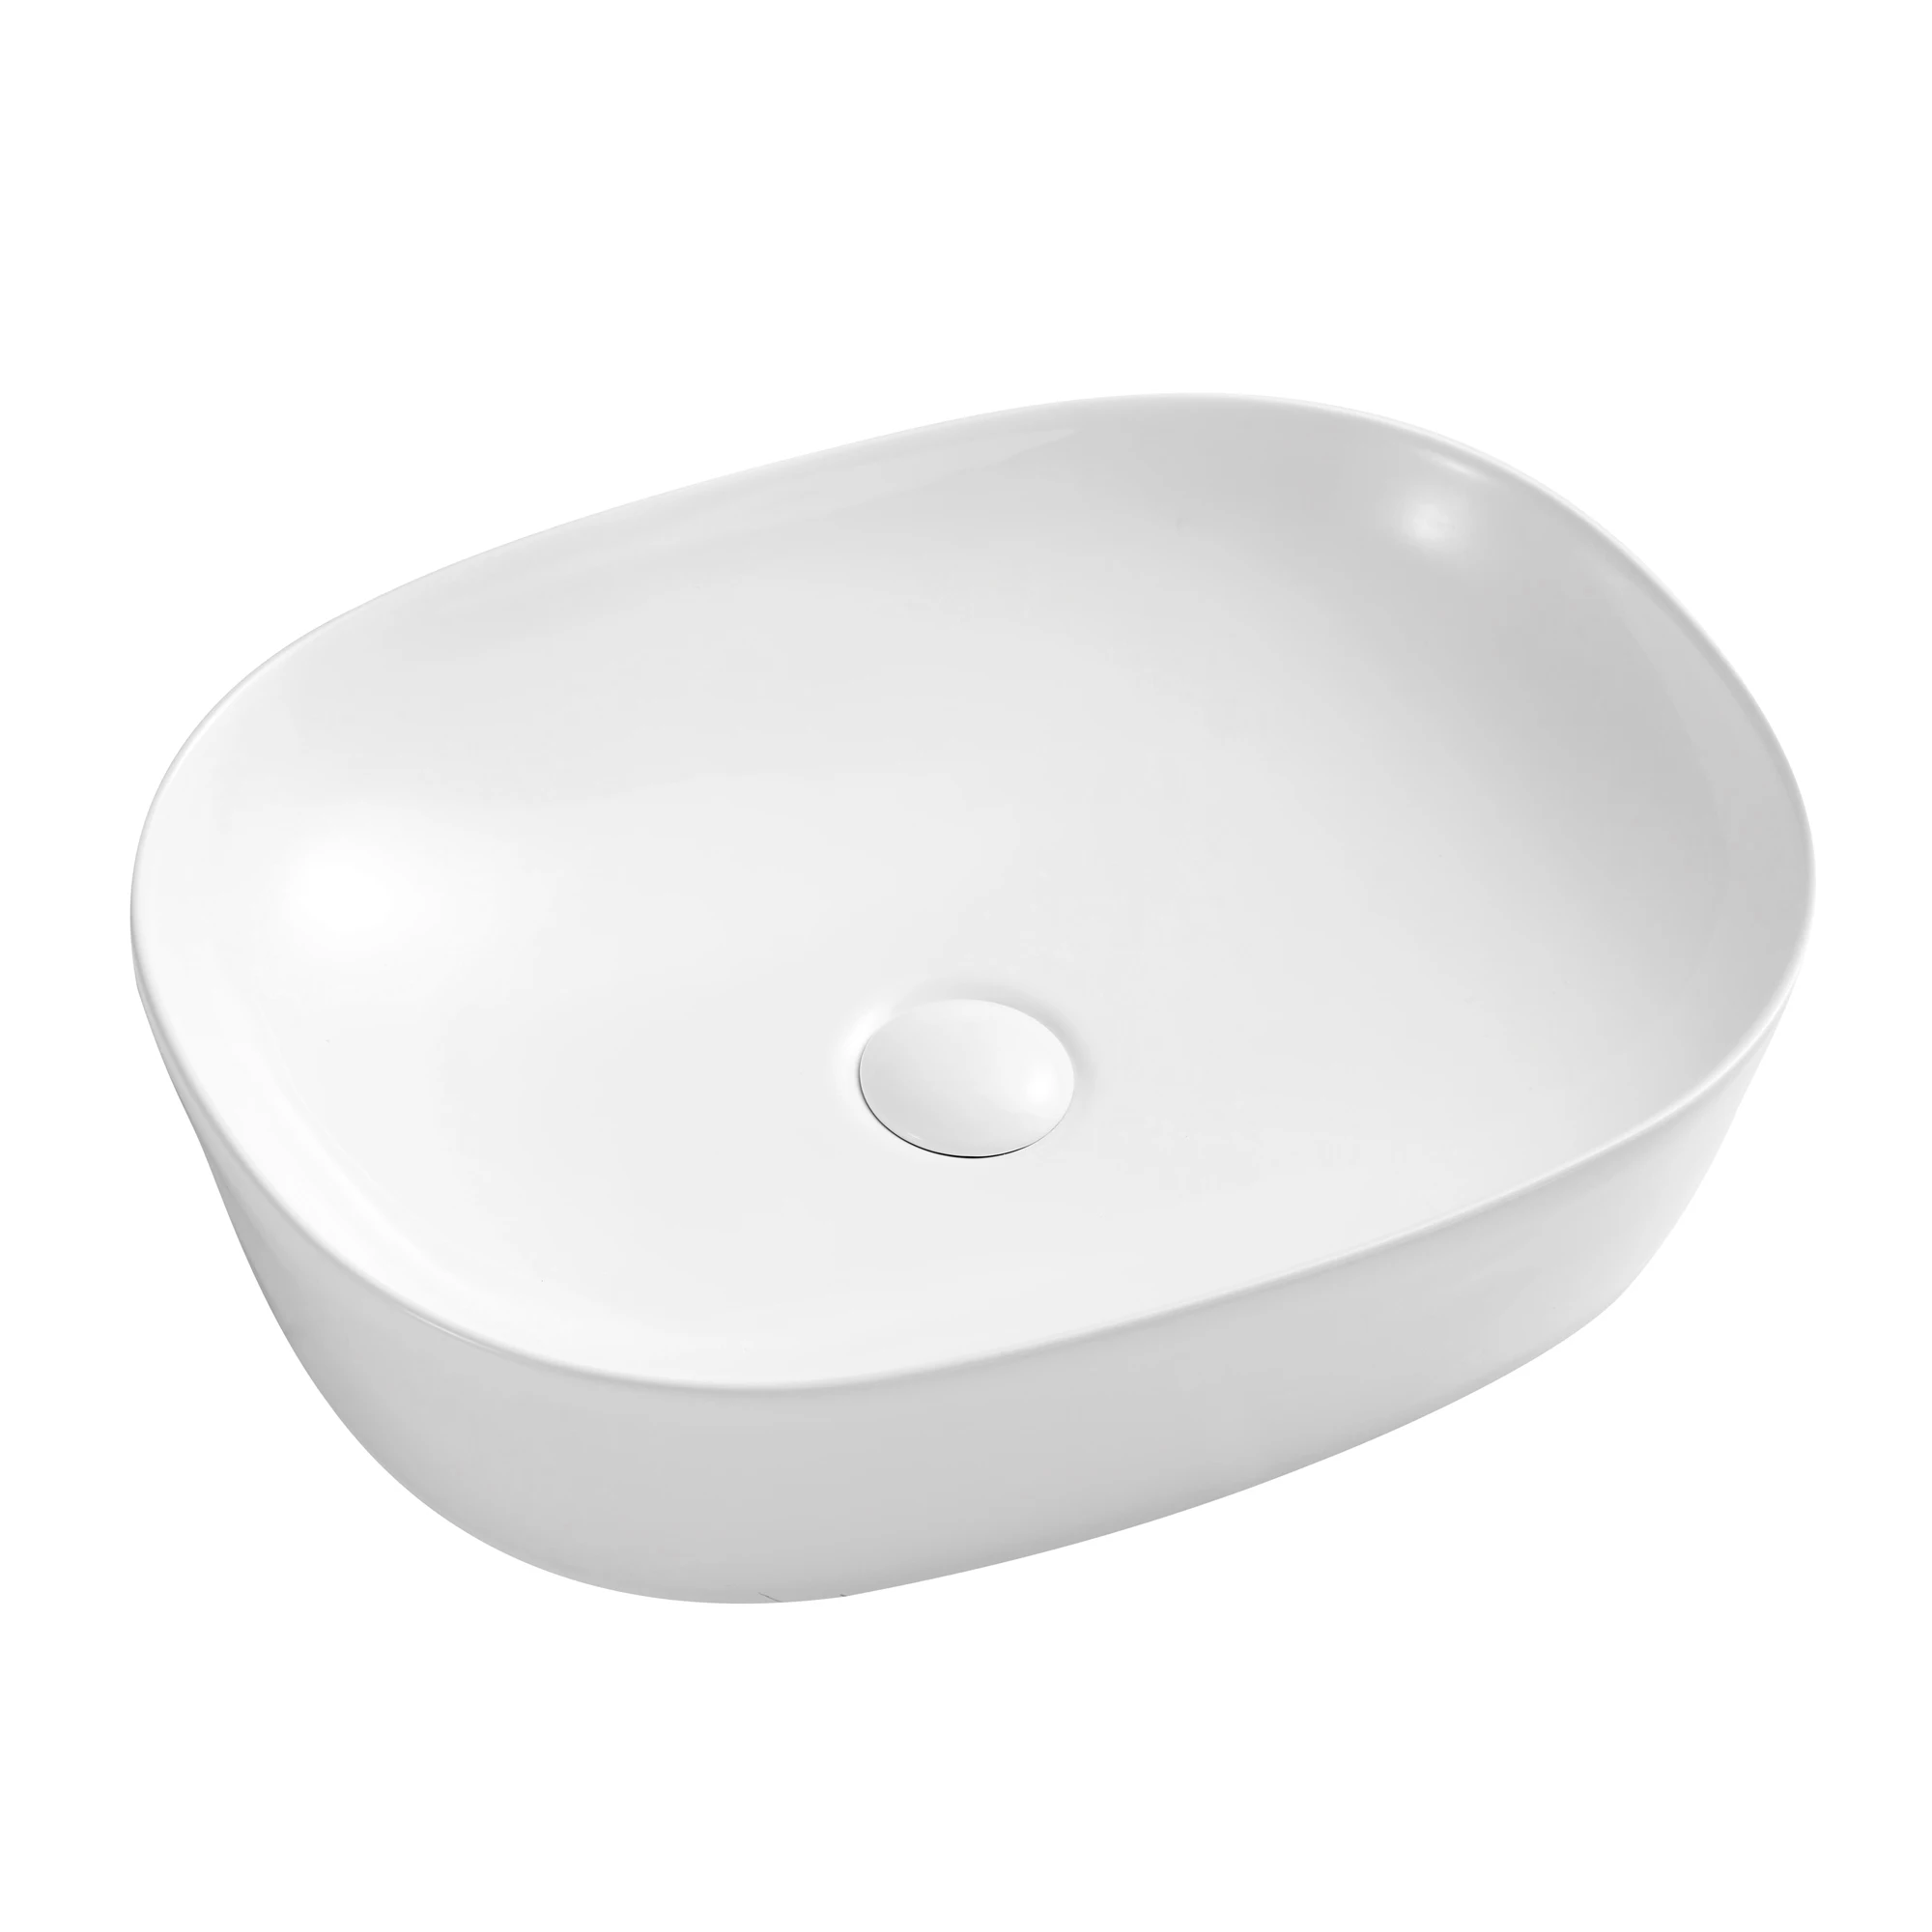 Ceramic Oval Vessel Sink Above Counter White Bathroom Vanity Sink Bathroom Sink Art Basin Buy Bathroom Vessel Sinks